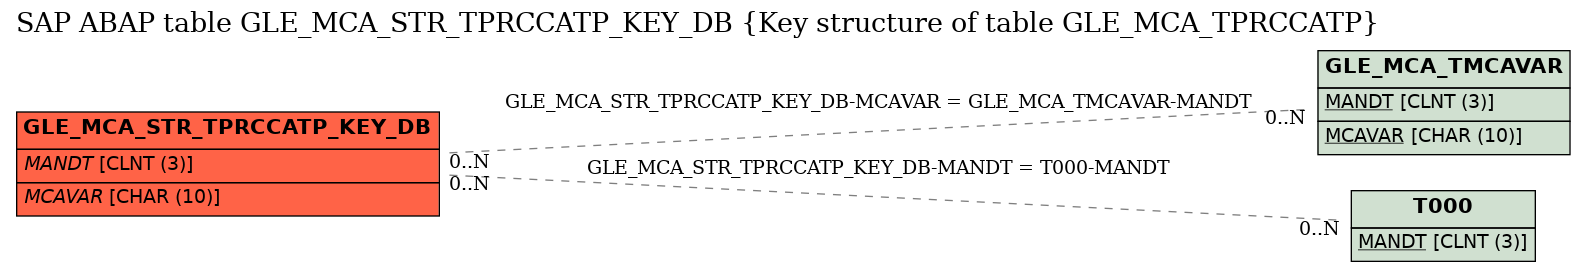 E-R Diagram for table GLE_MCA_STR_TPRCCATP_KEY_DB (Key structure of table GLE_MCA_TPRCCATP)